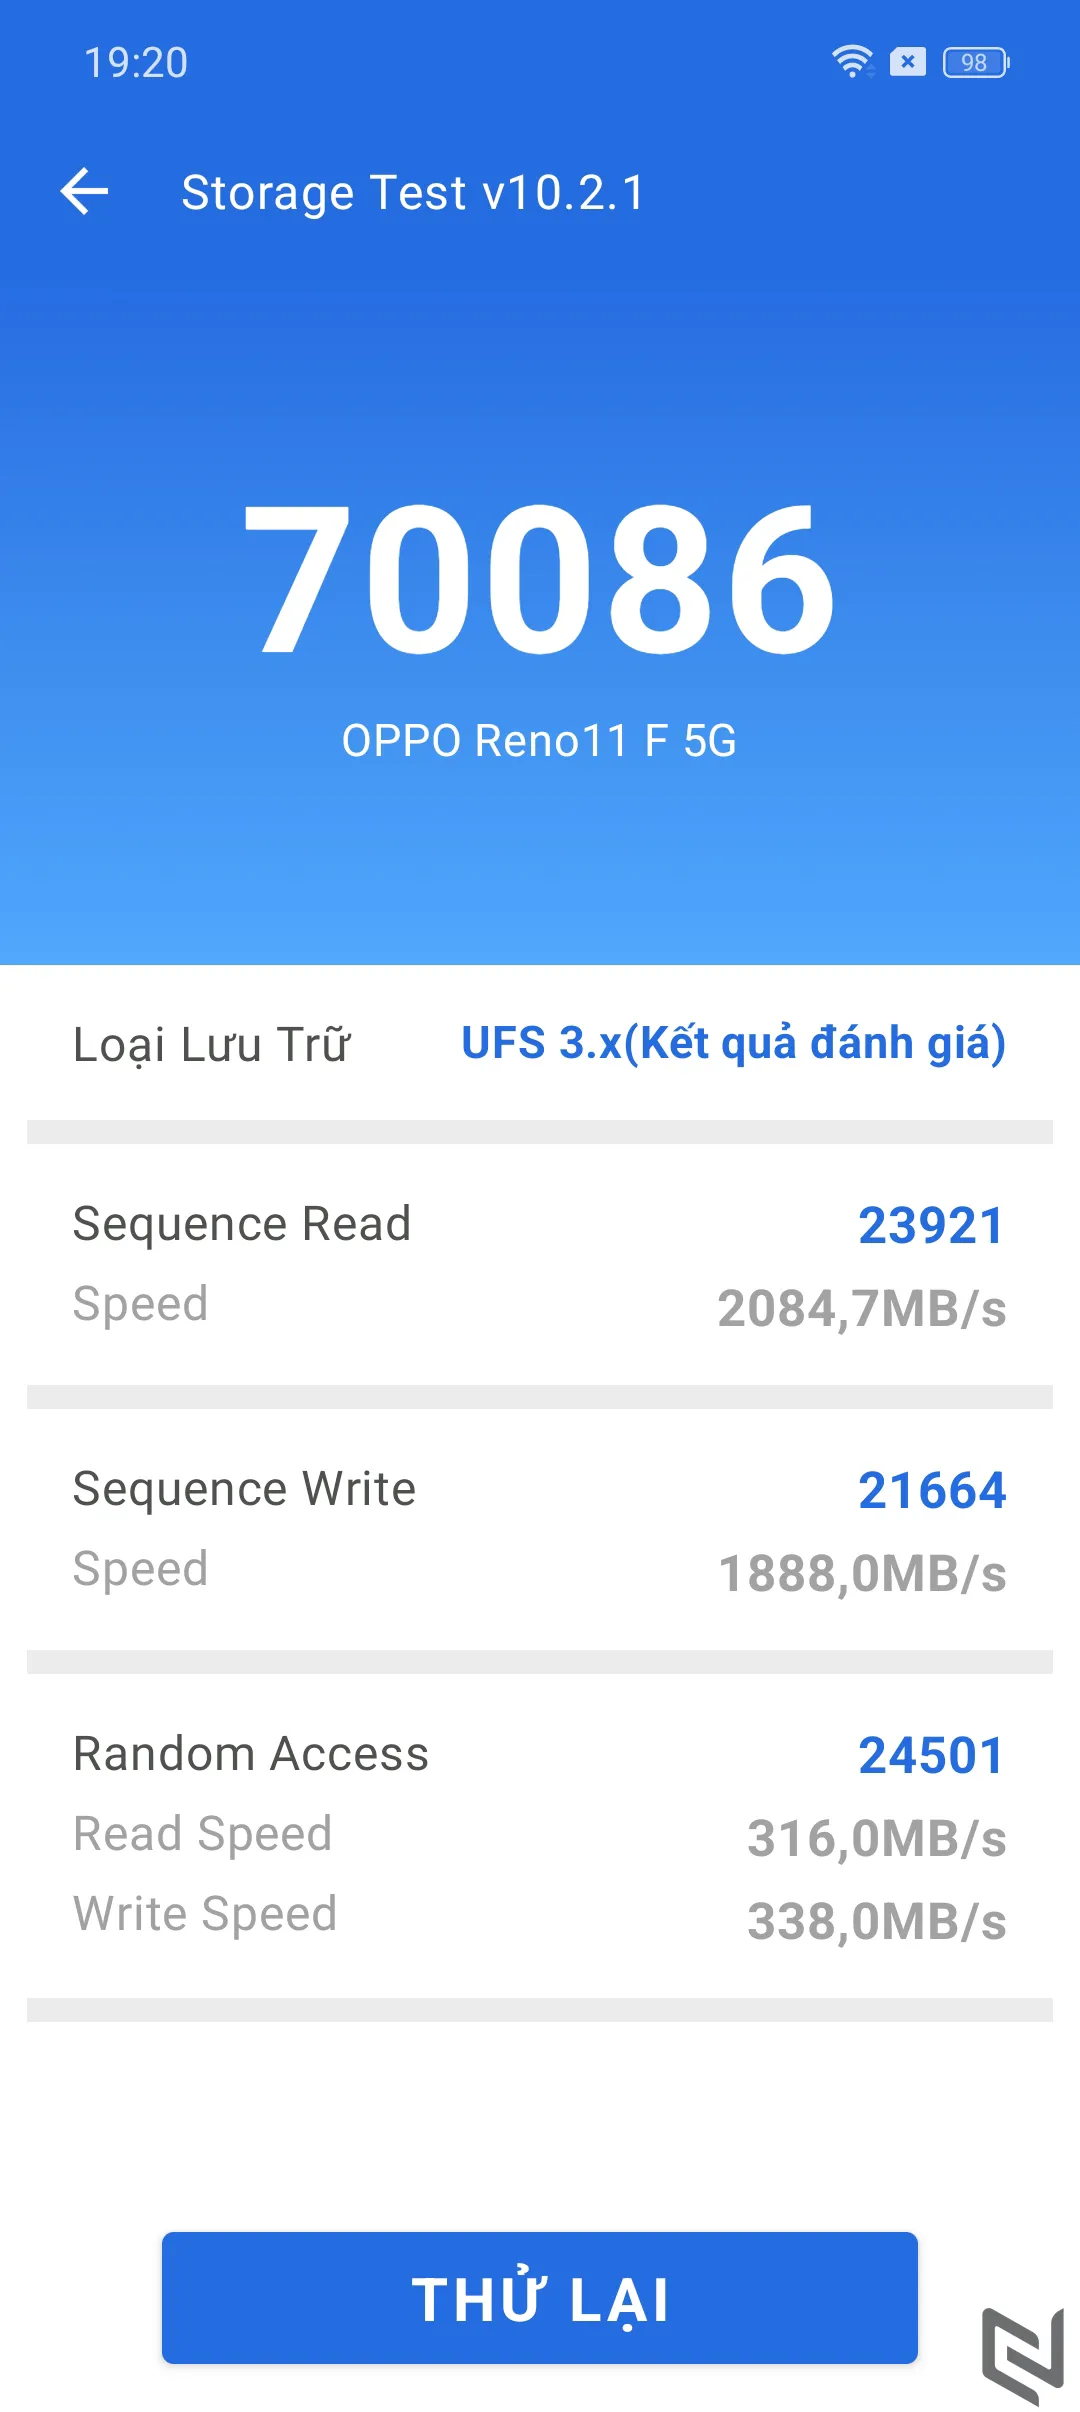 Đánh giá OPPO Reno11 F 5G: Lựa chọn hợp lý cho Gen Z, hội tụ 3 yếu tố Thiết Kế - Hiệu Năng - Camera